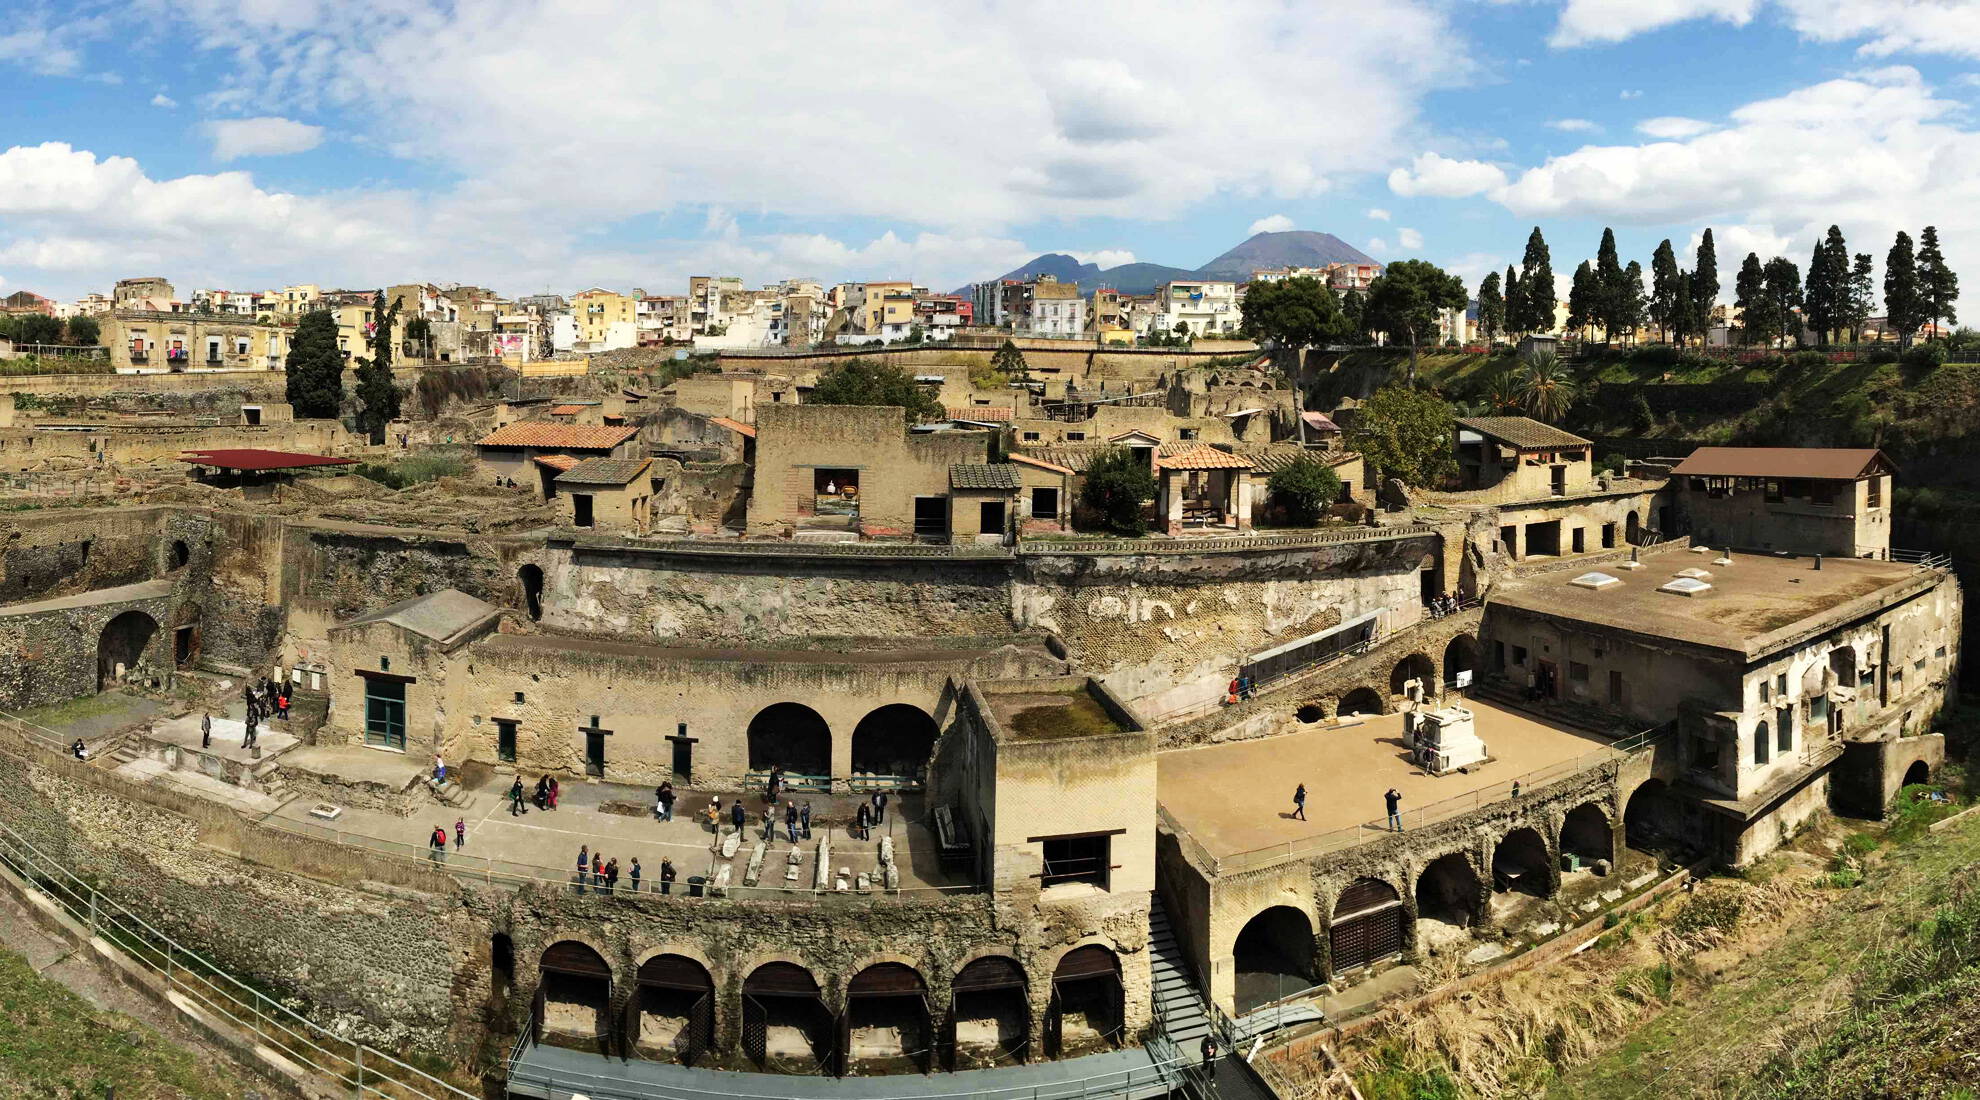 Pompeii - Vesuvius - Herculaneum port shore excursion 2